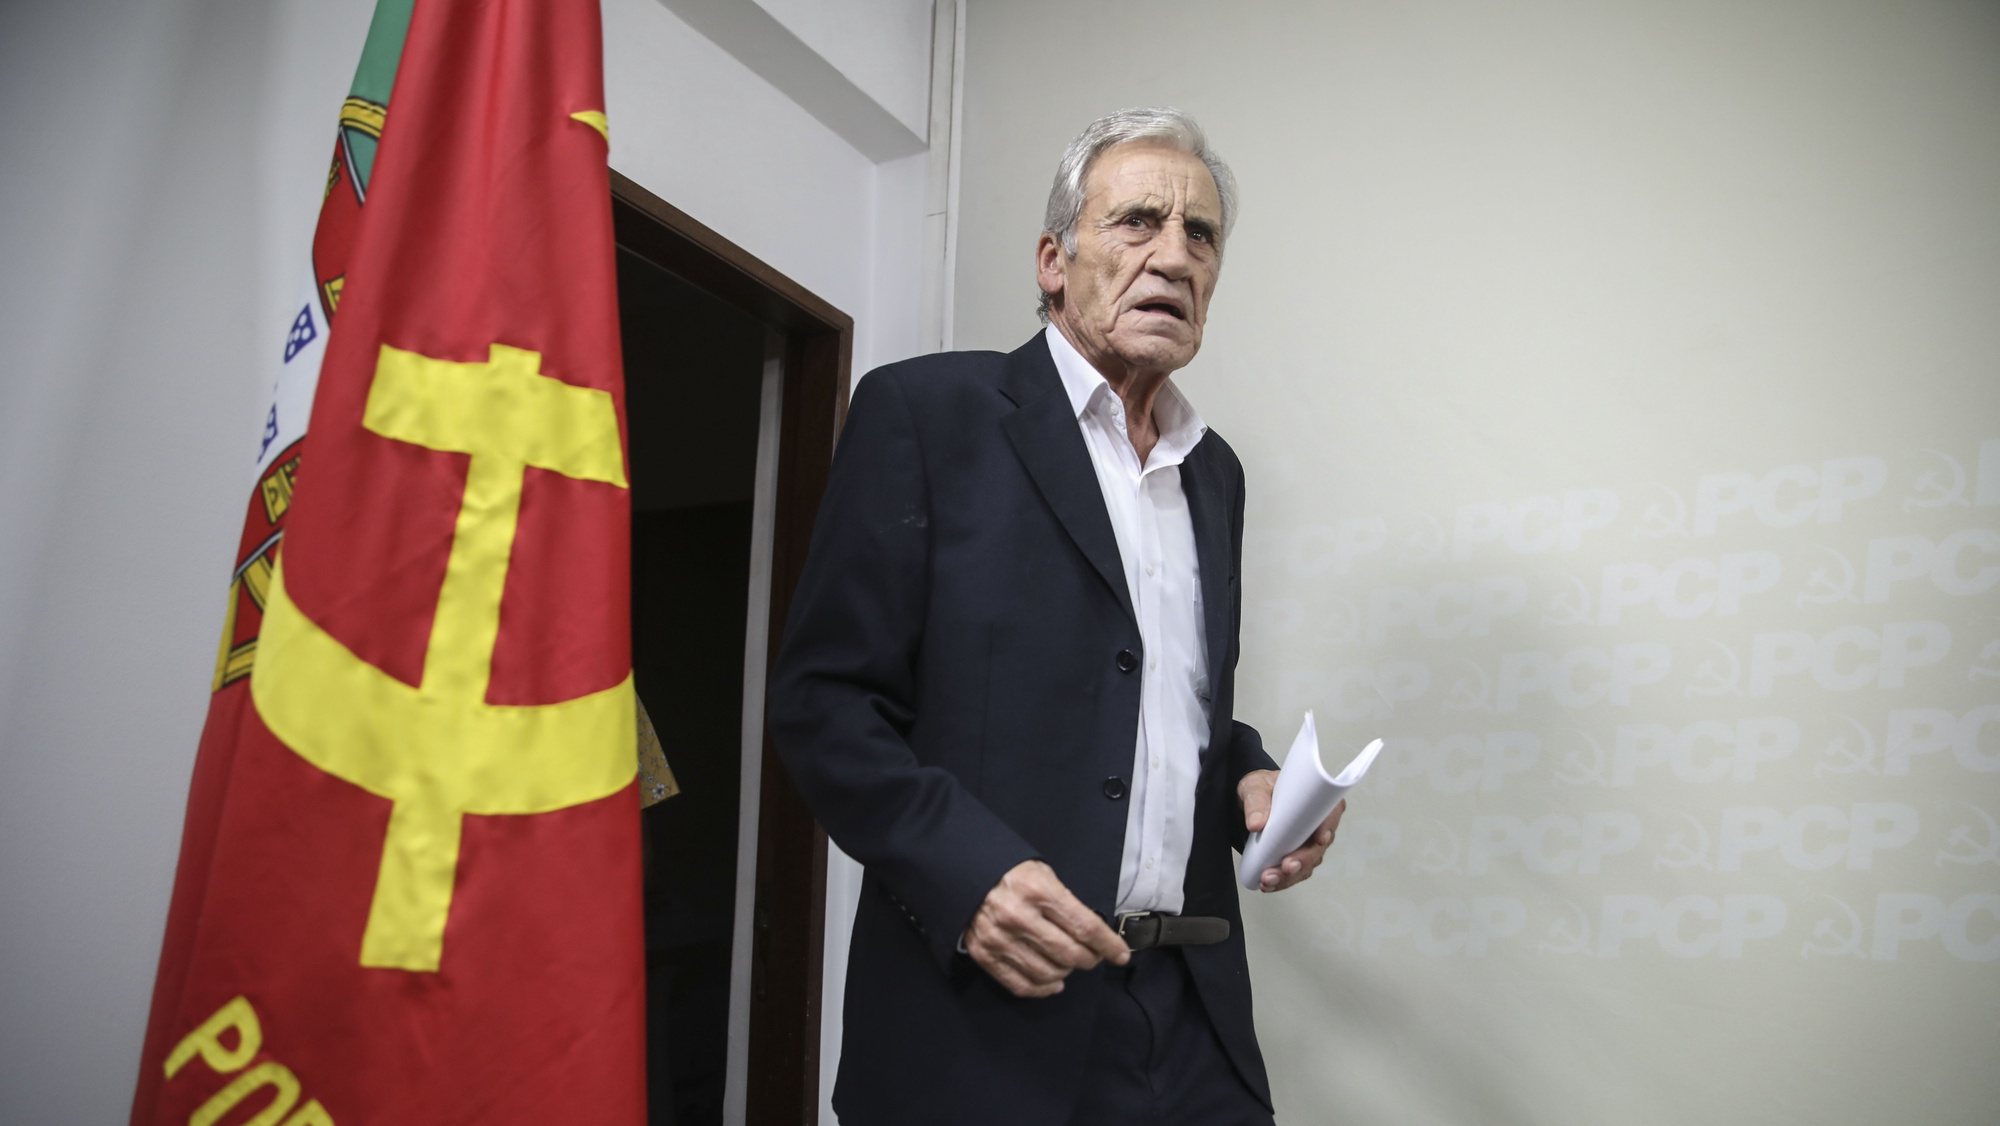 O secretário-geral do Partido Comunista Português (PCP), Jerónimo de Sousa, apresenta as principais conclusões após terminada a reunião do Comité Central em conferência de imprensa na sede do partido, 18 setembro 2022.  ANDRÉ KOSTERS/LUSA